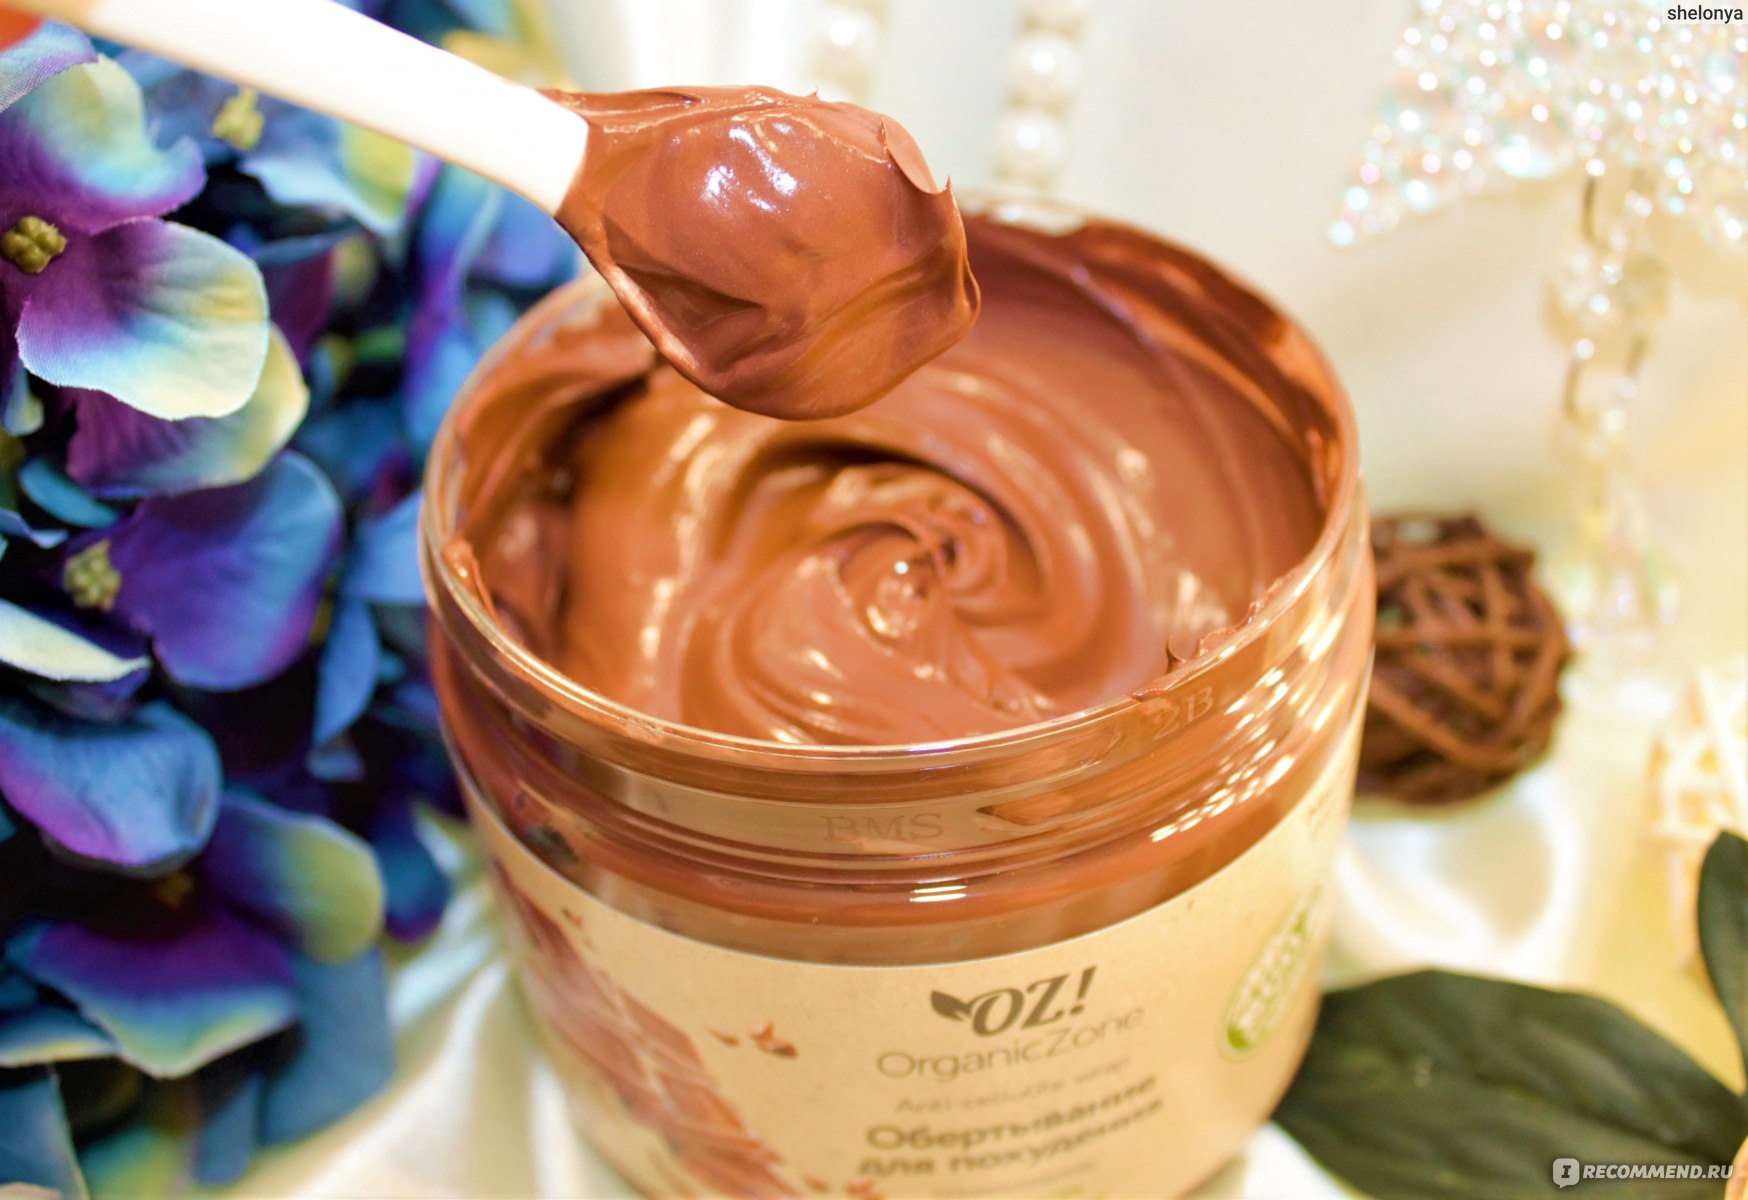 Oz! ORGANICZONE обертывание для похудения шоколадное с маслом какао бобов и молотым кофе